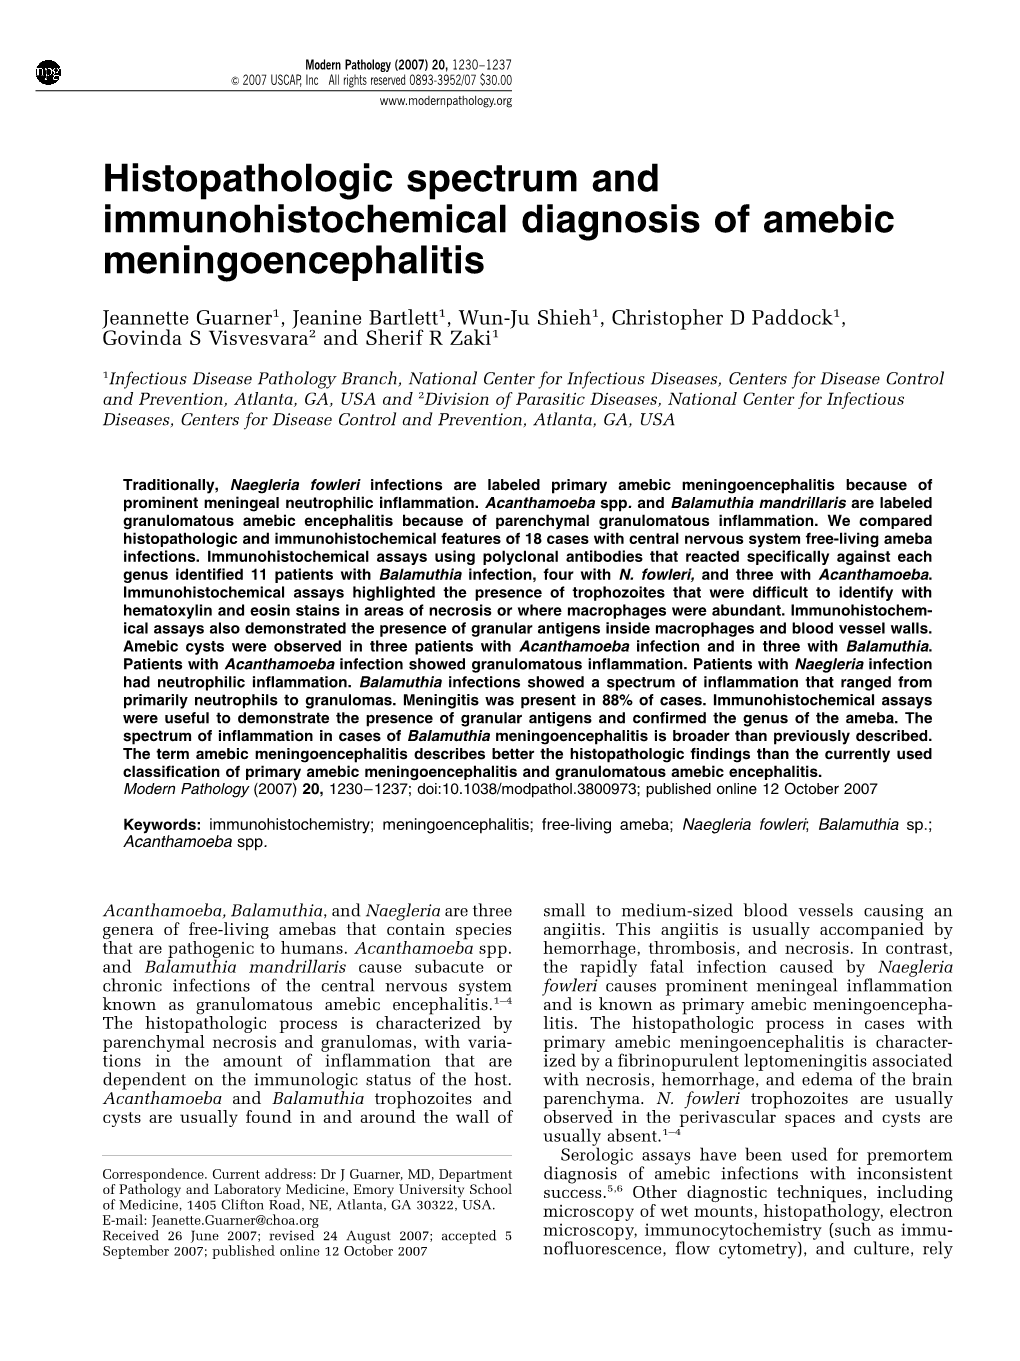 Histopathologic Spectrum and Immunohistochemical Diagnosis of Amebic Meningoencephalitis